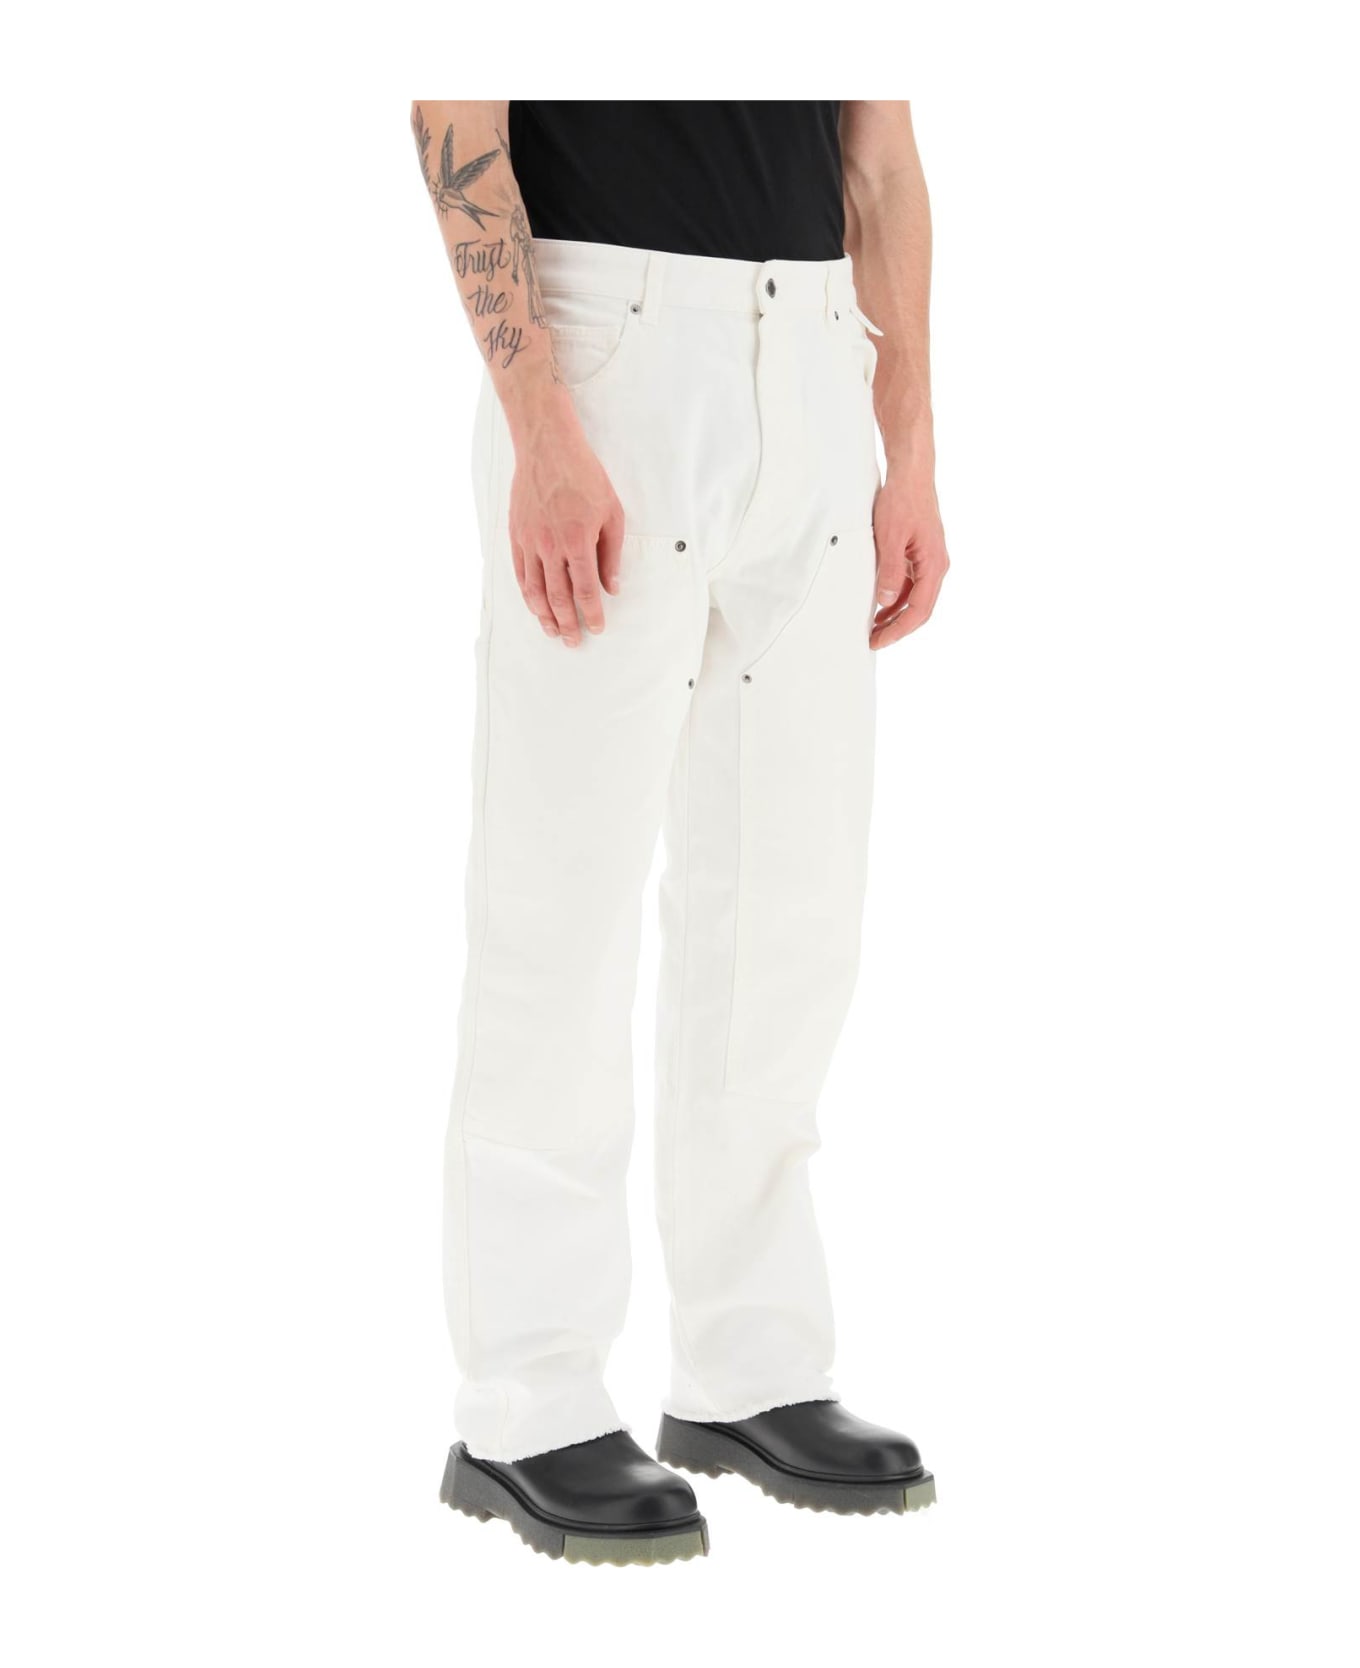 DARKPARK 'john' Carpenter Jeans - DIRTY WHITE (White)